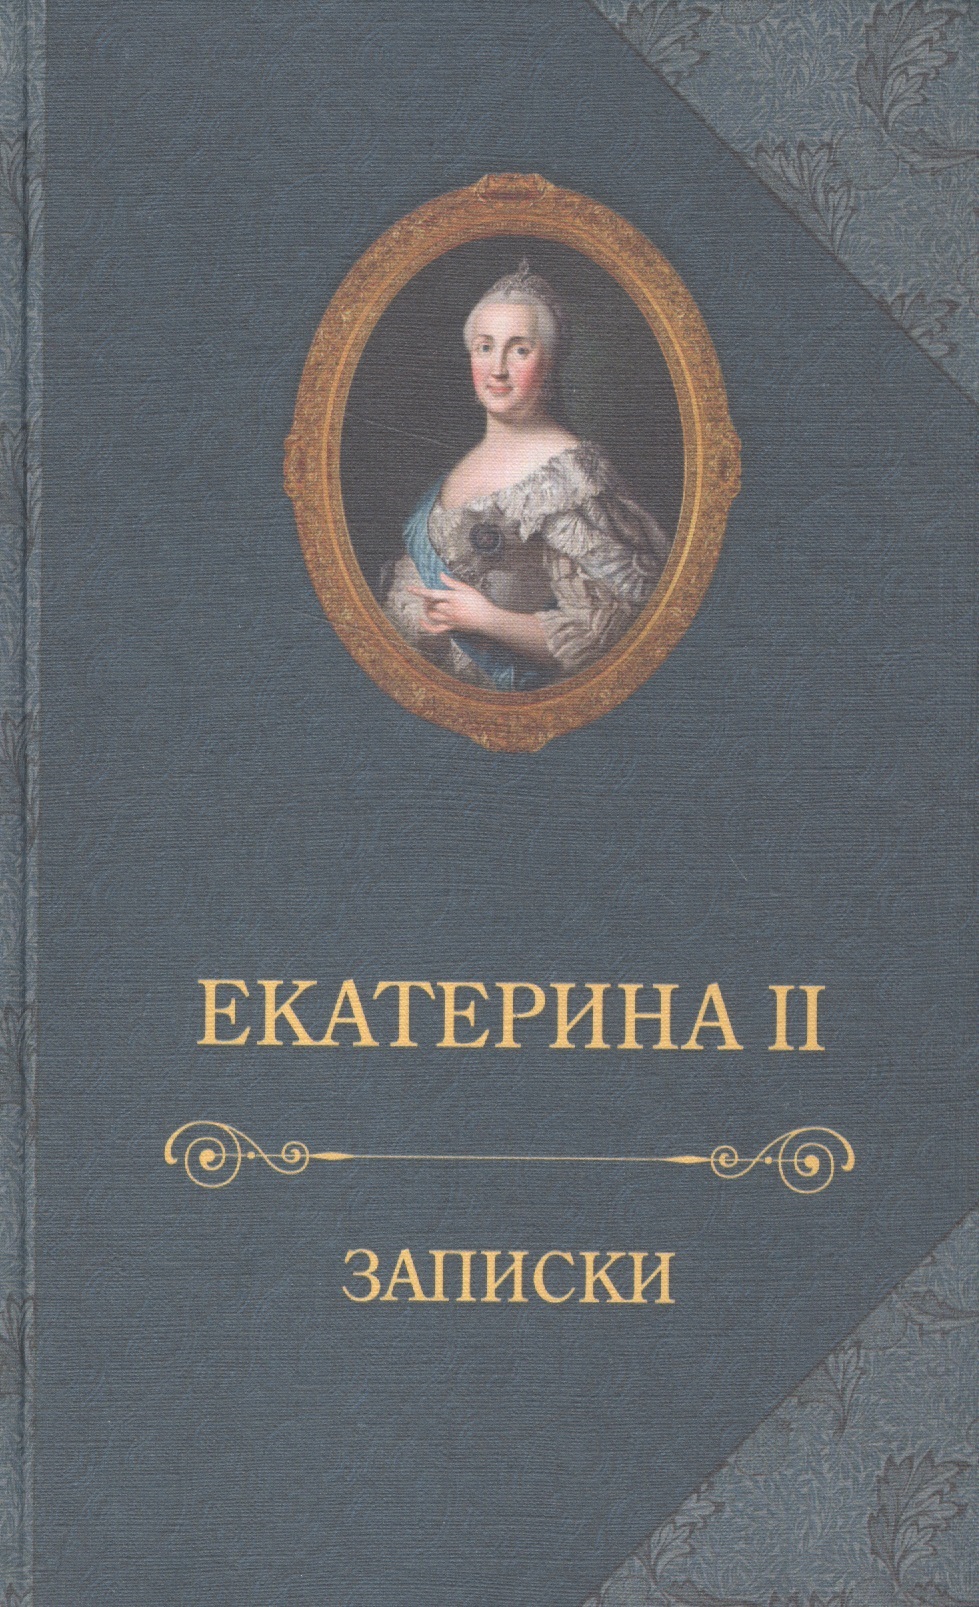 Екатерина II (Императрица) - Екатерина II.Записки